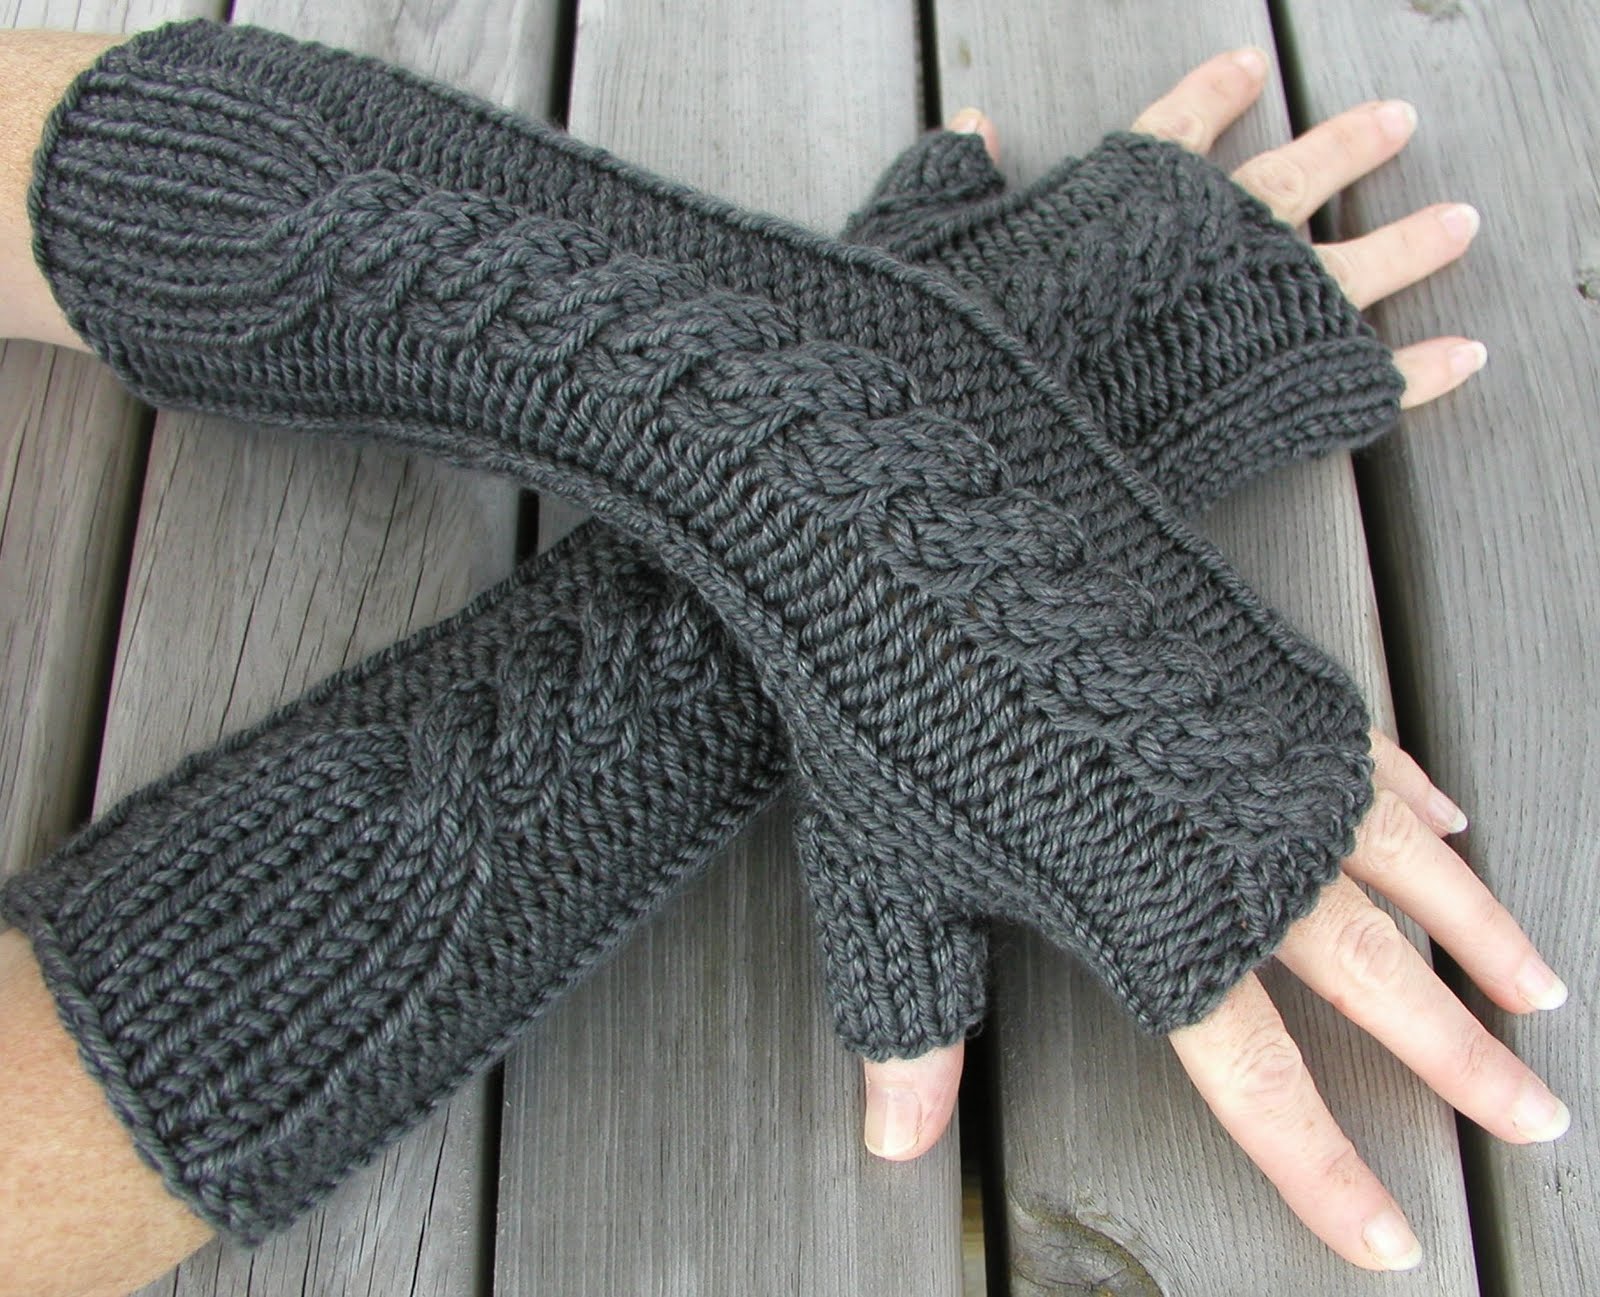 http://4.bp.blogspot.com/_8evNMKhbq_A/TIya7feUvaI/AAAAAAAACMI/xwiD4JApk_o/s1600/merino_wool_cashmere_gloves.jpg